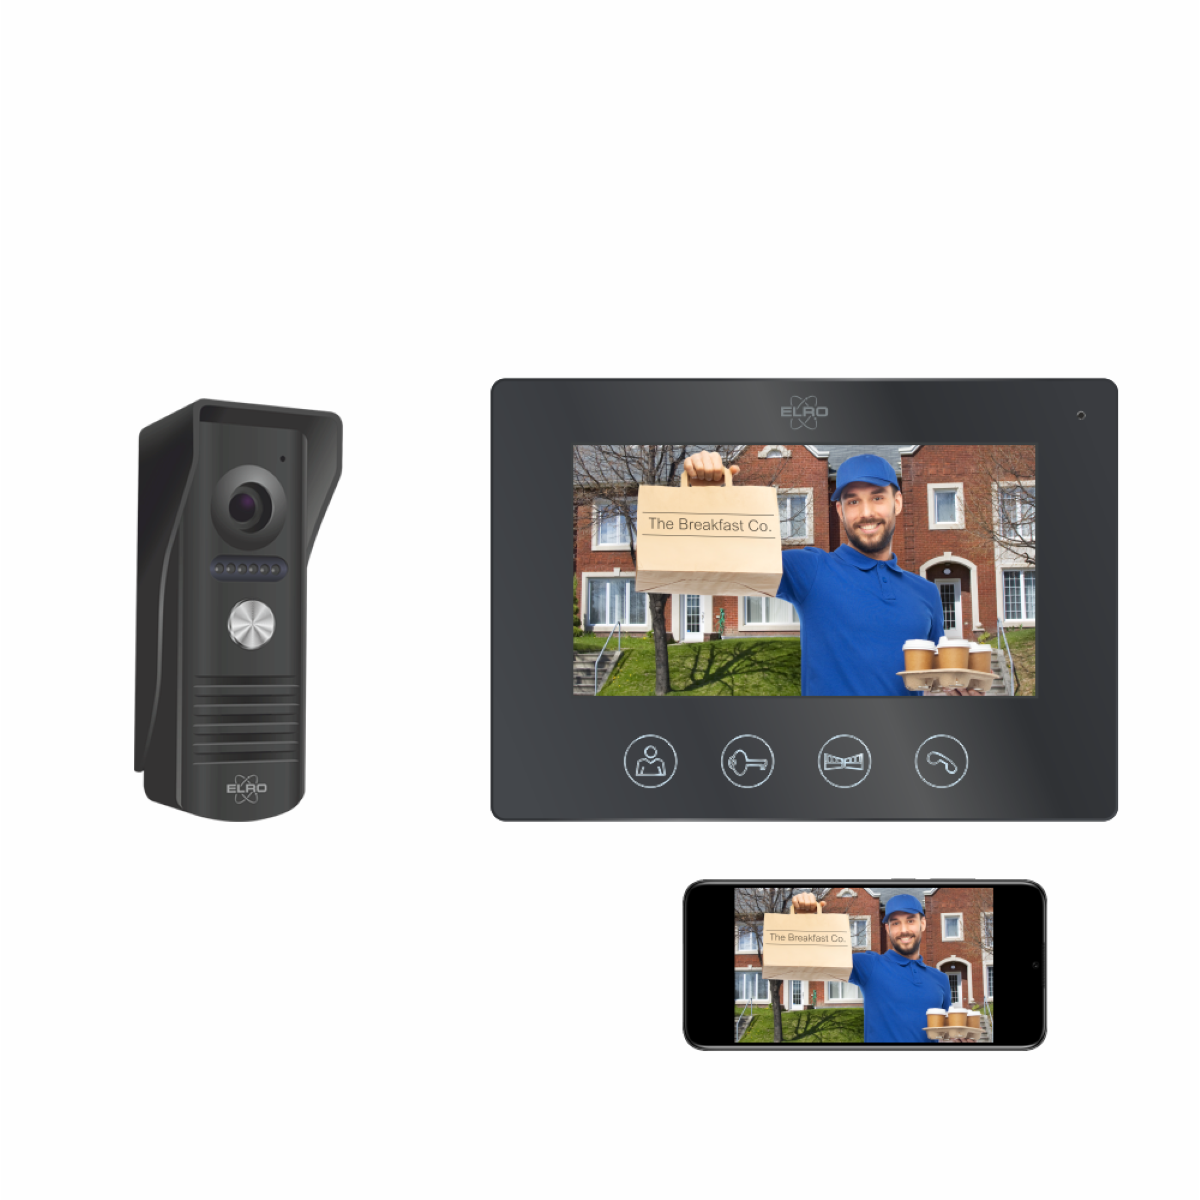 ELRO DV50 Verdrahtete Türsprechanlage App, und Monitor mit Schwarz